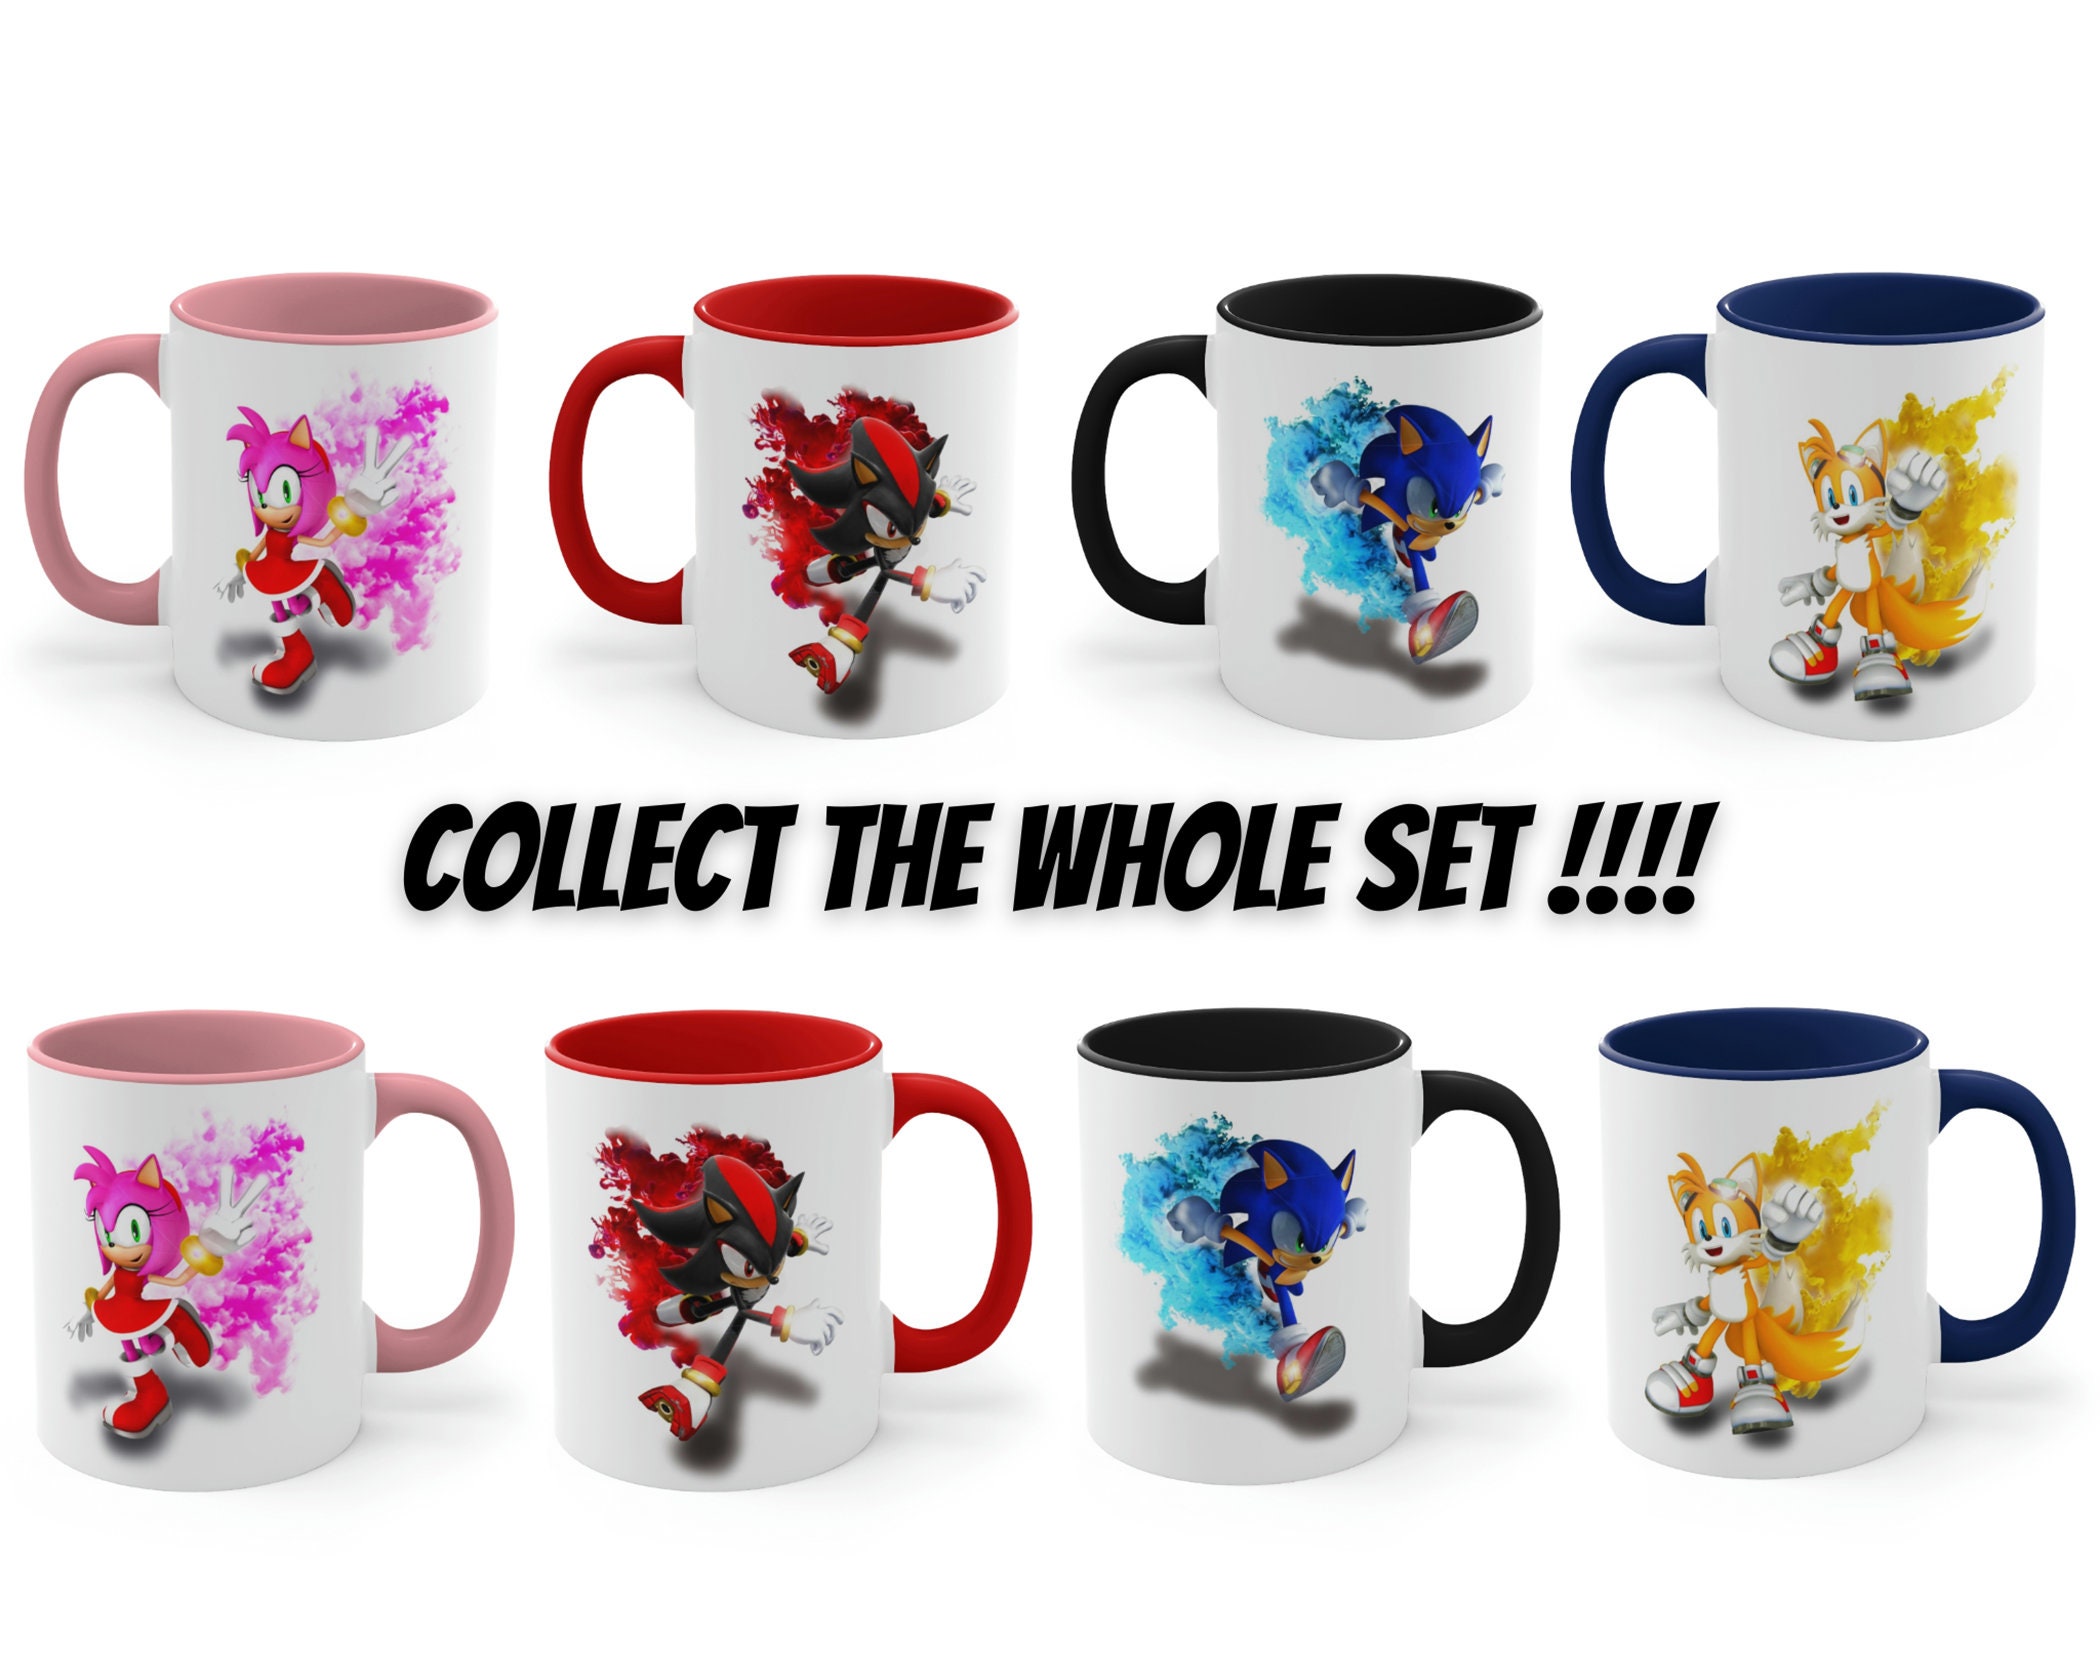 Sonic The Hedgehog 11oz Boxed Mug